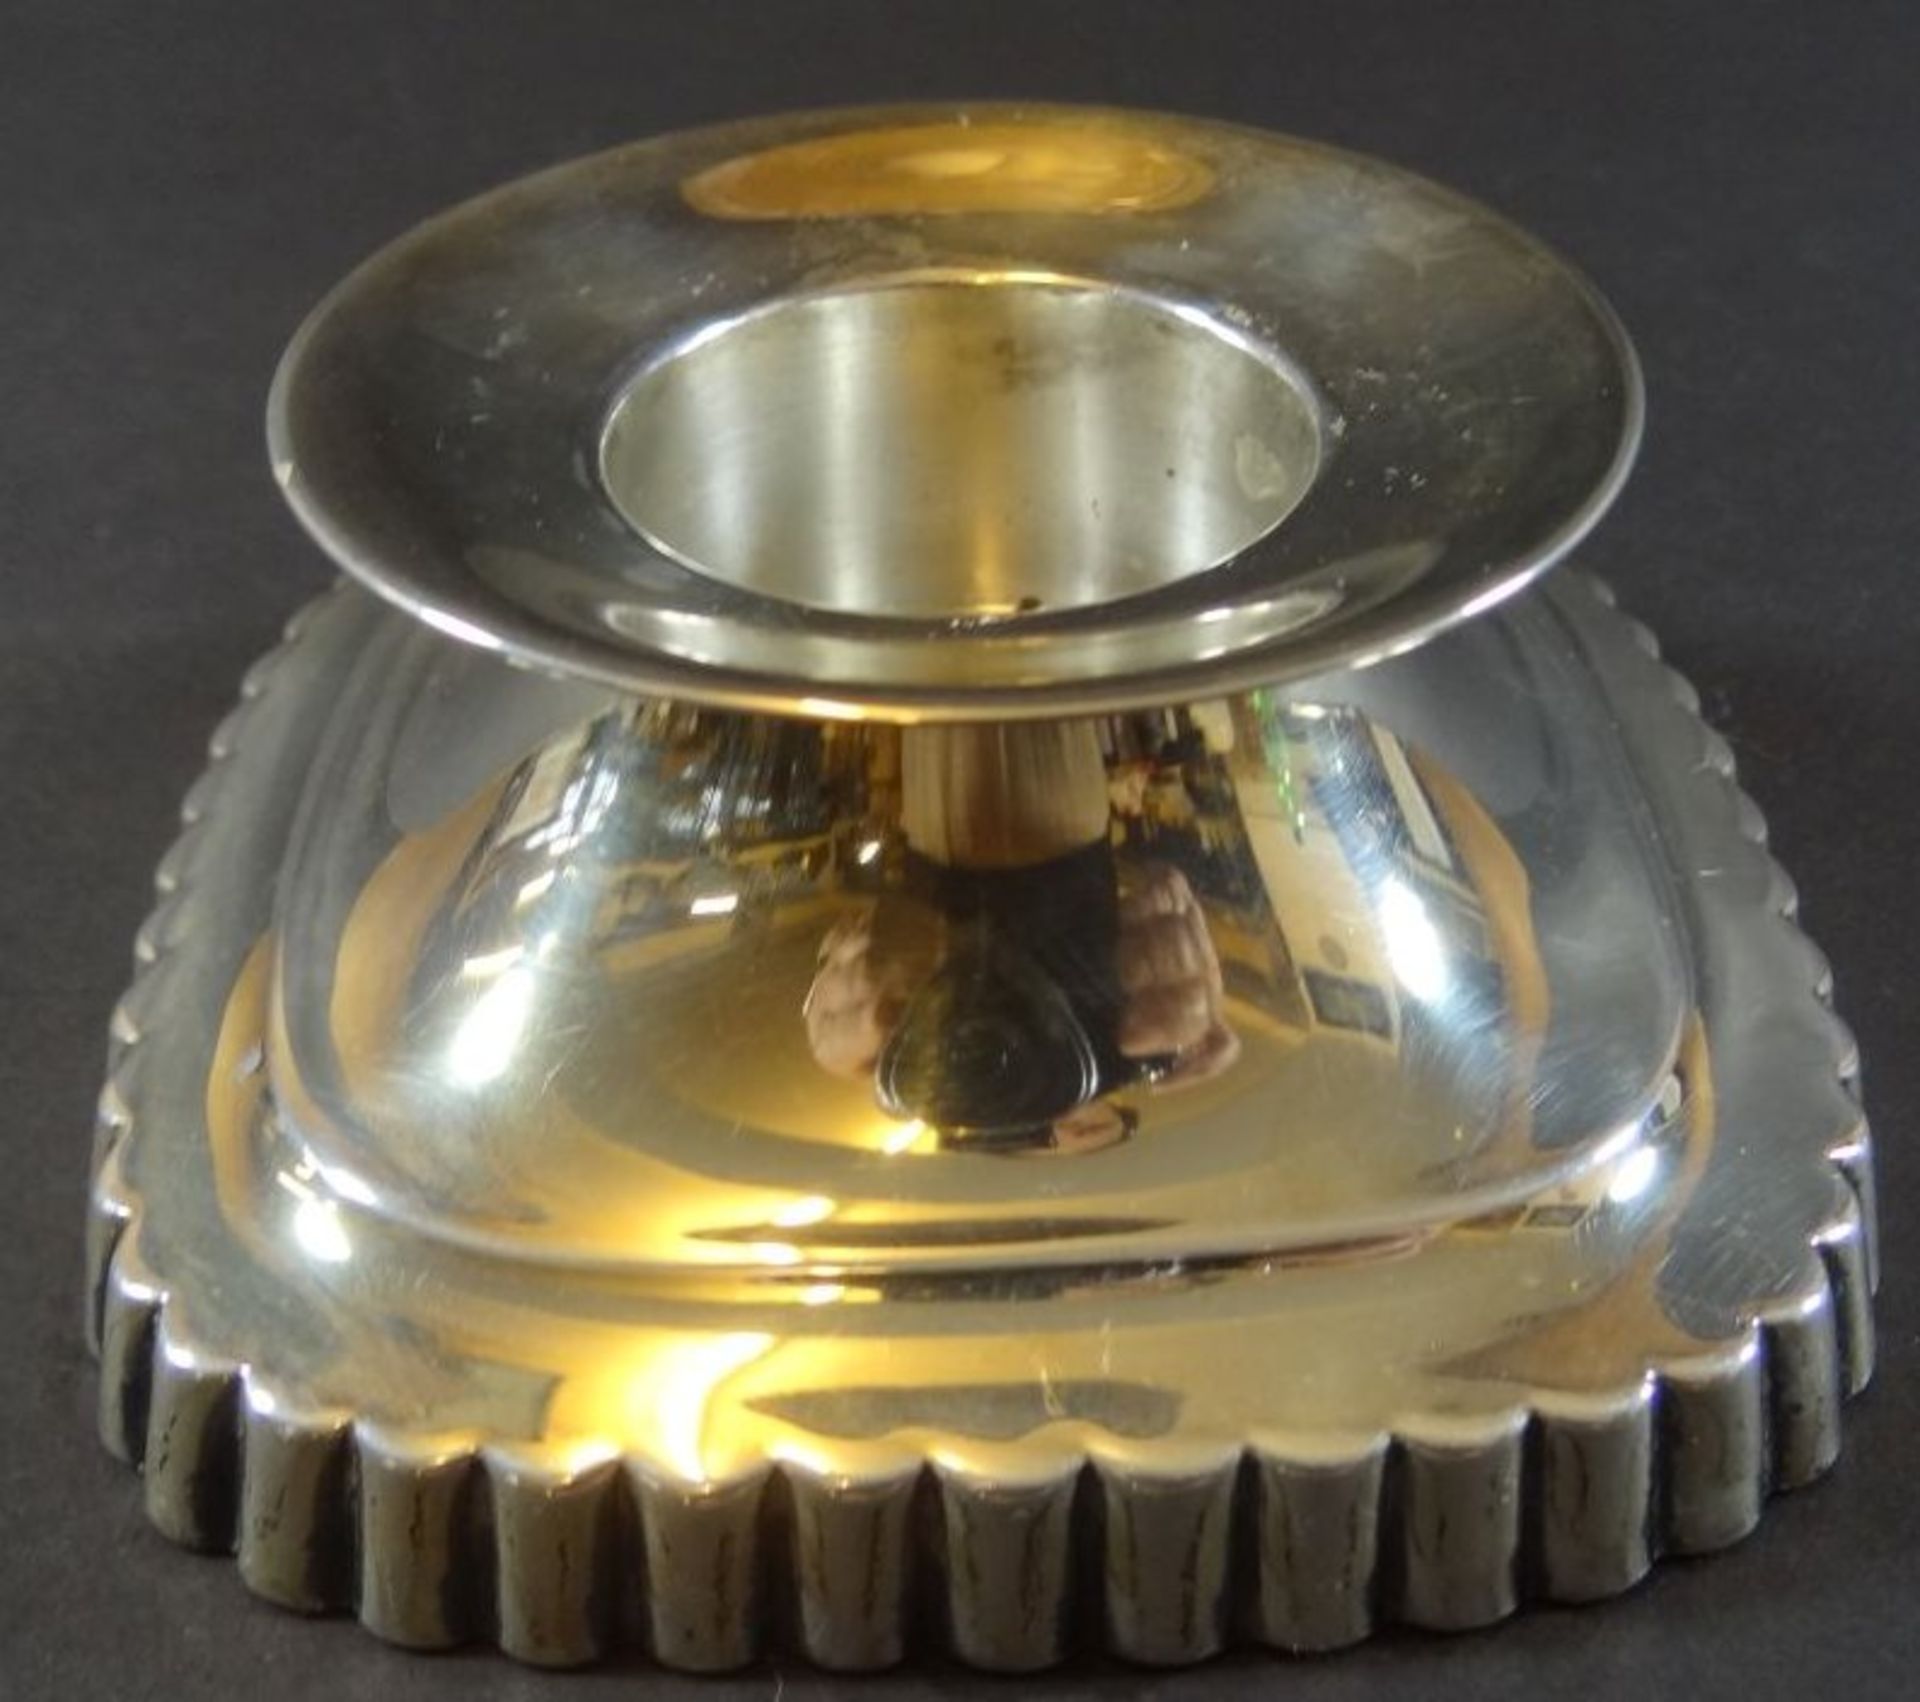 Kerzenhalter Silber-835-Wilkens-Bremen, gefüllter Stand, H-4 cm, 10x10 cm, guter Zustand